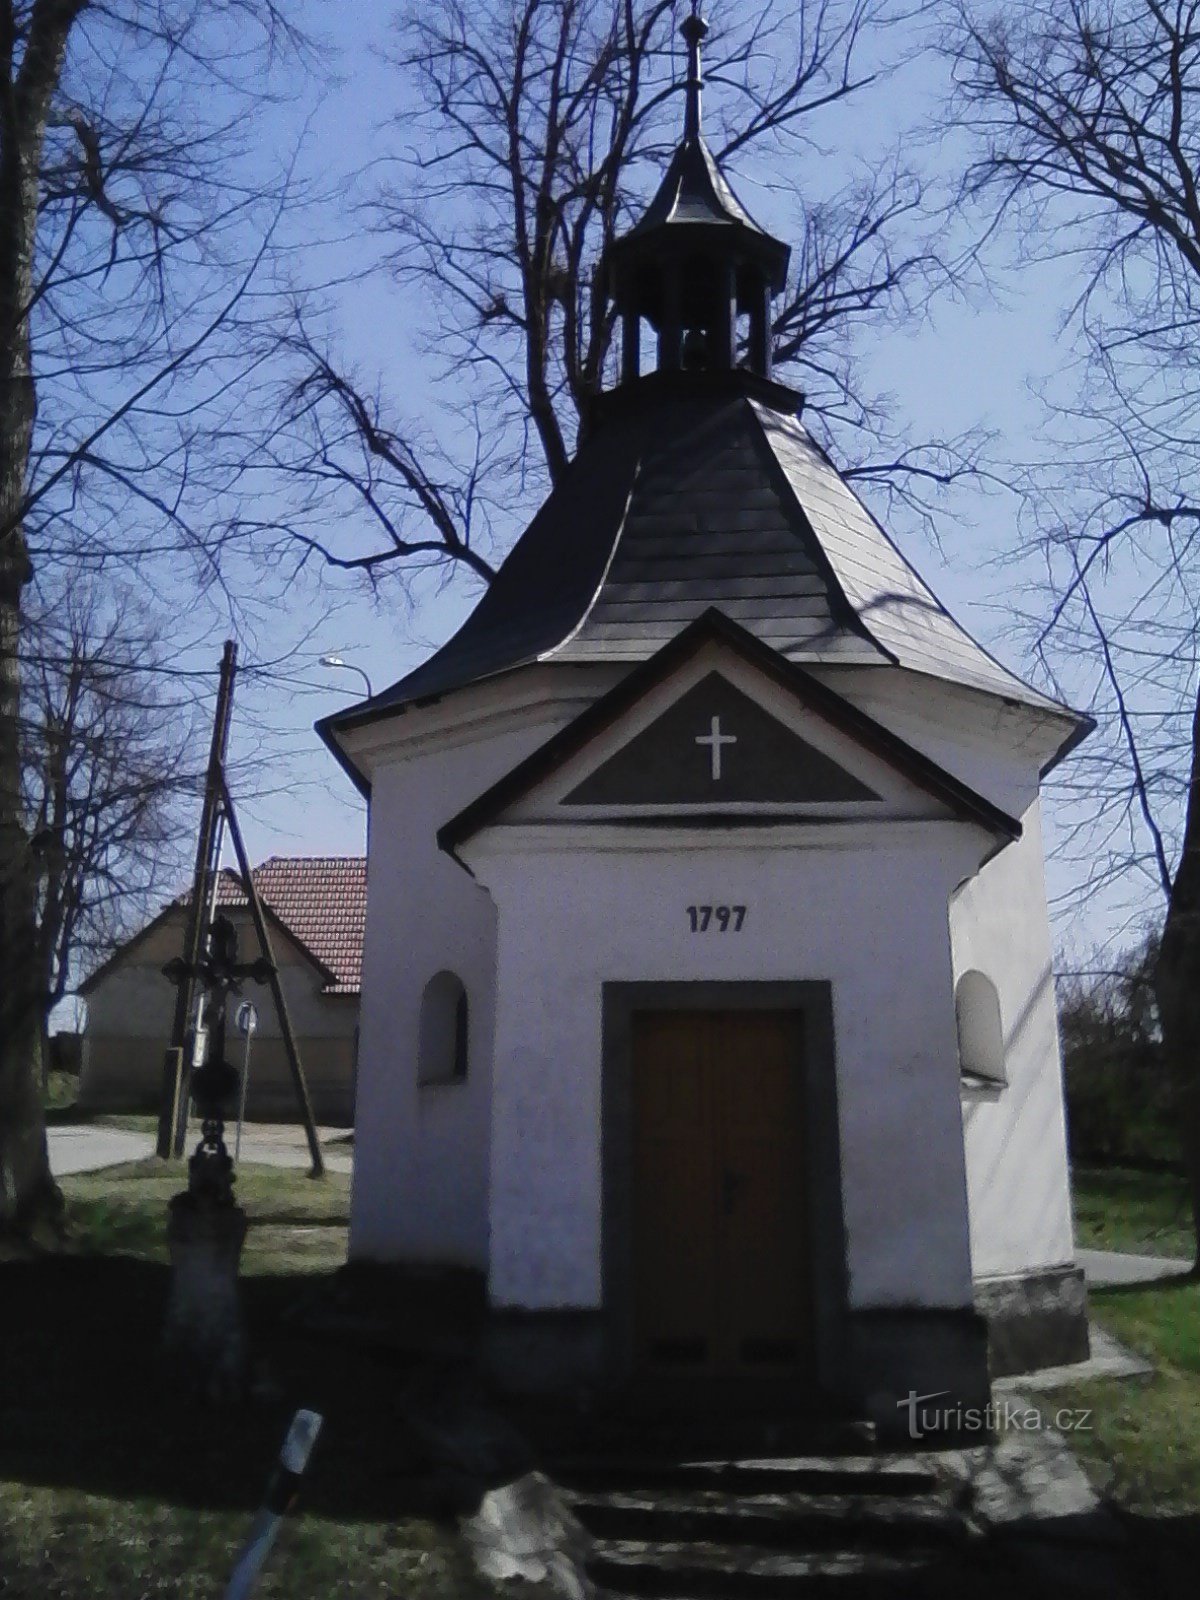 2. Capela barroca da coroação da Virgem Maria em Litohošt.